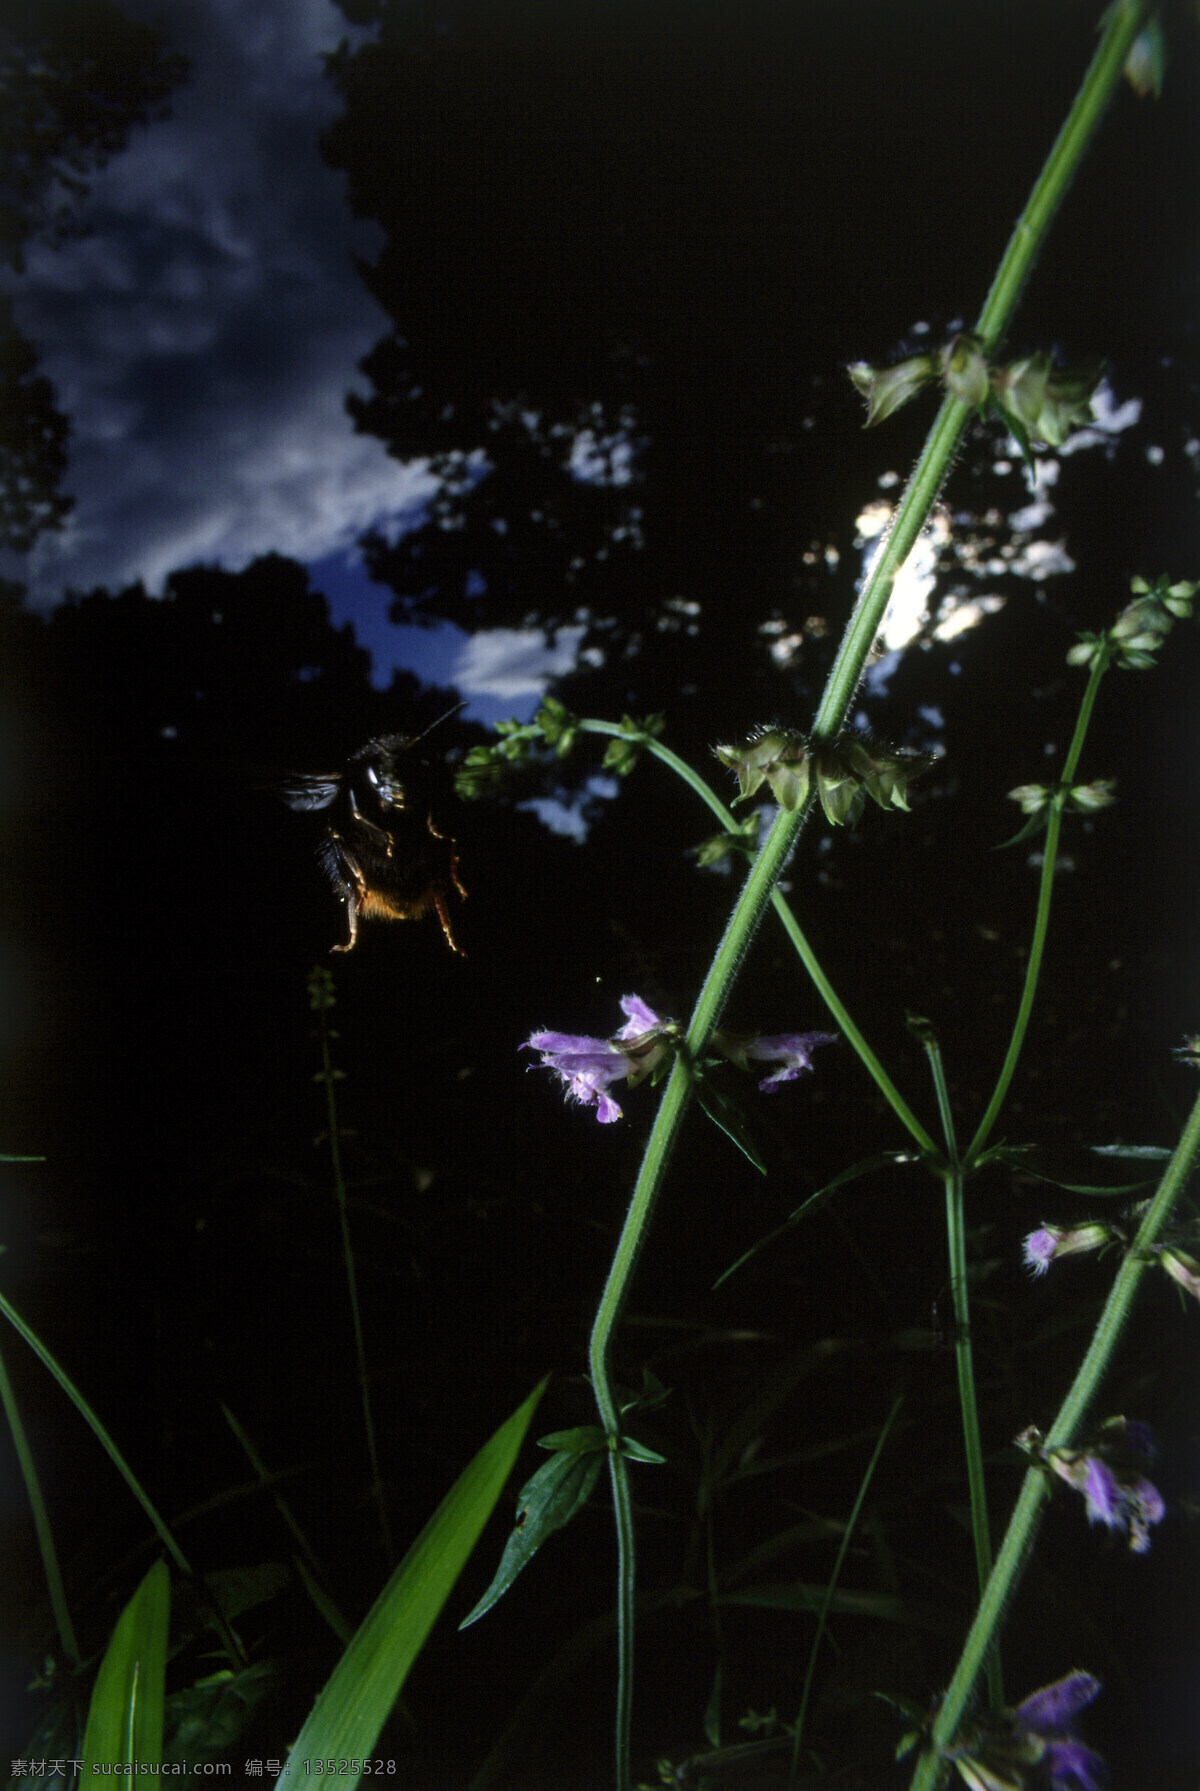 花苞 上 小 蜜蜂 小蜜蜂 采蜜 花蕾 动物世界 昆虫世界 花草树木 生态环境 生物世界 野外 自然界 自然生物 自然生态 高清图片 自然 植物 户外 傍晚 黄昏 天黑